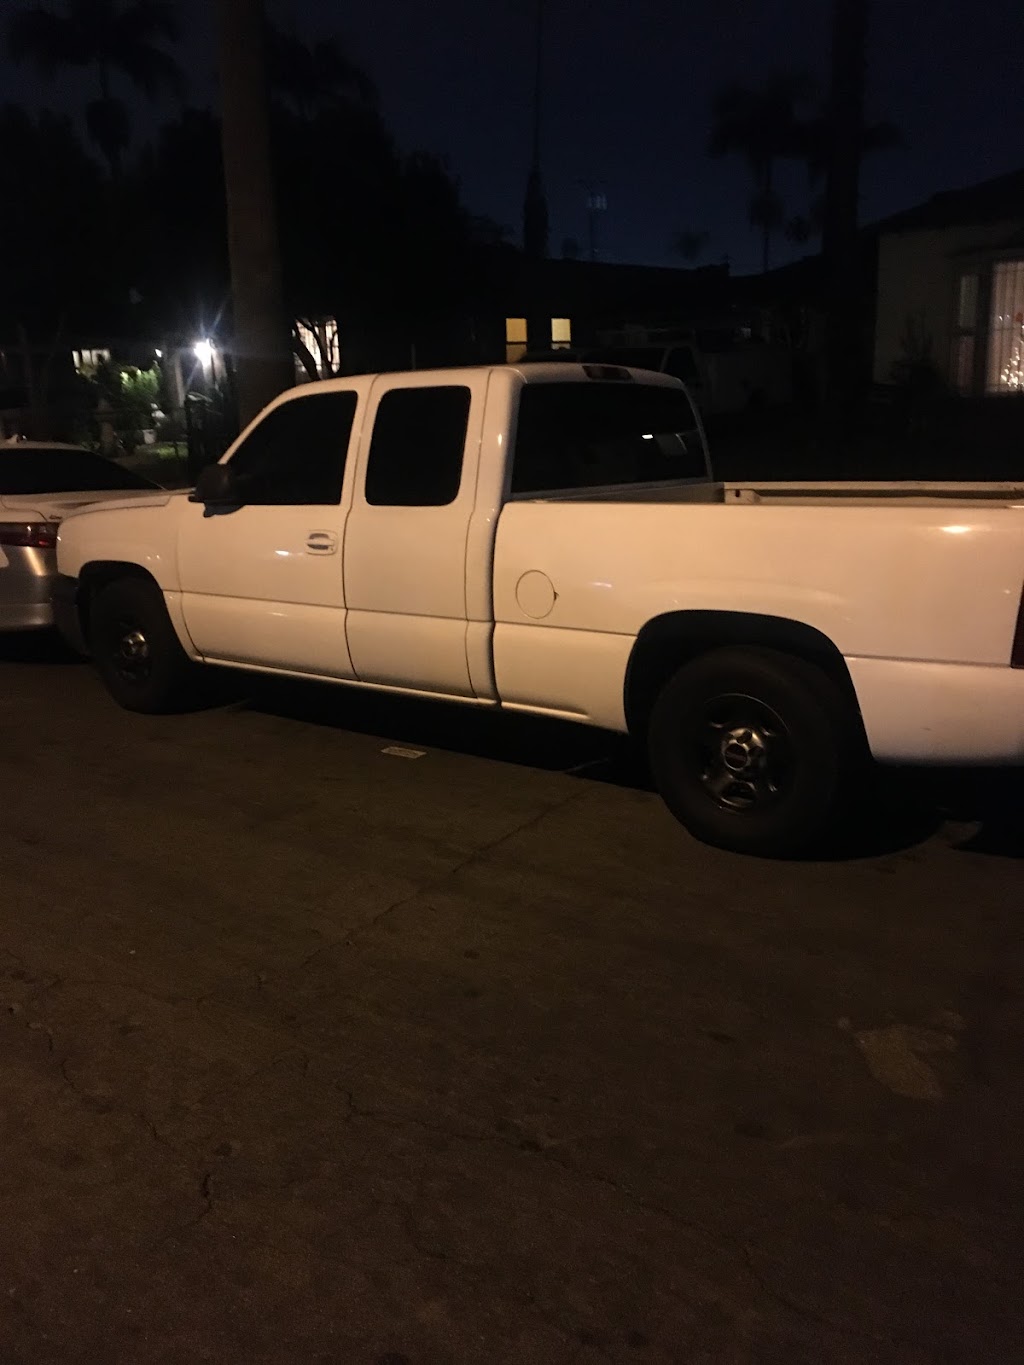 Angels Mobile Auto Repair | 450 Agostino Rd, San Gabriel, CA 91776 | Phone: (626) 286-6202